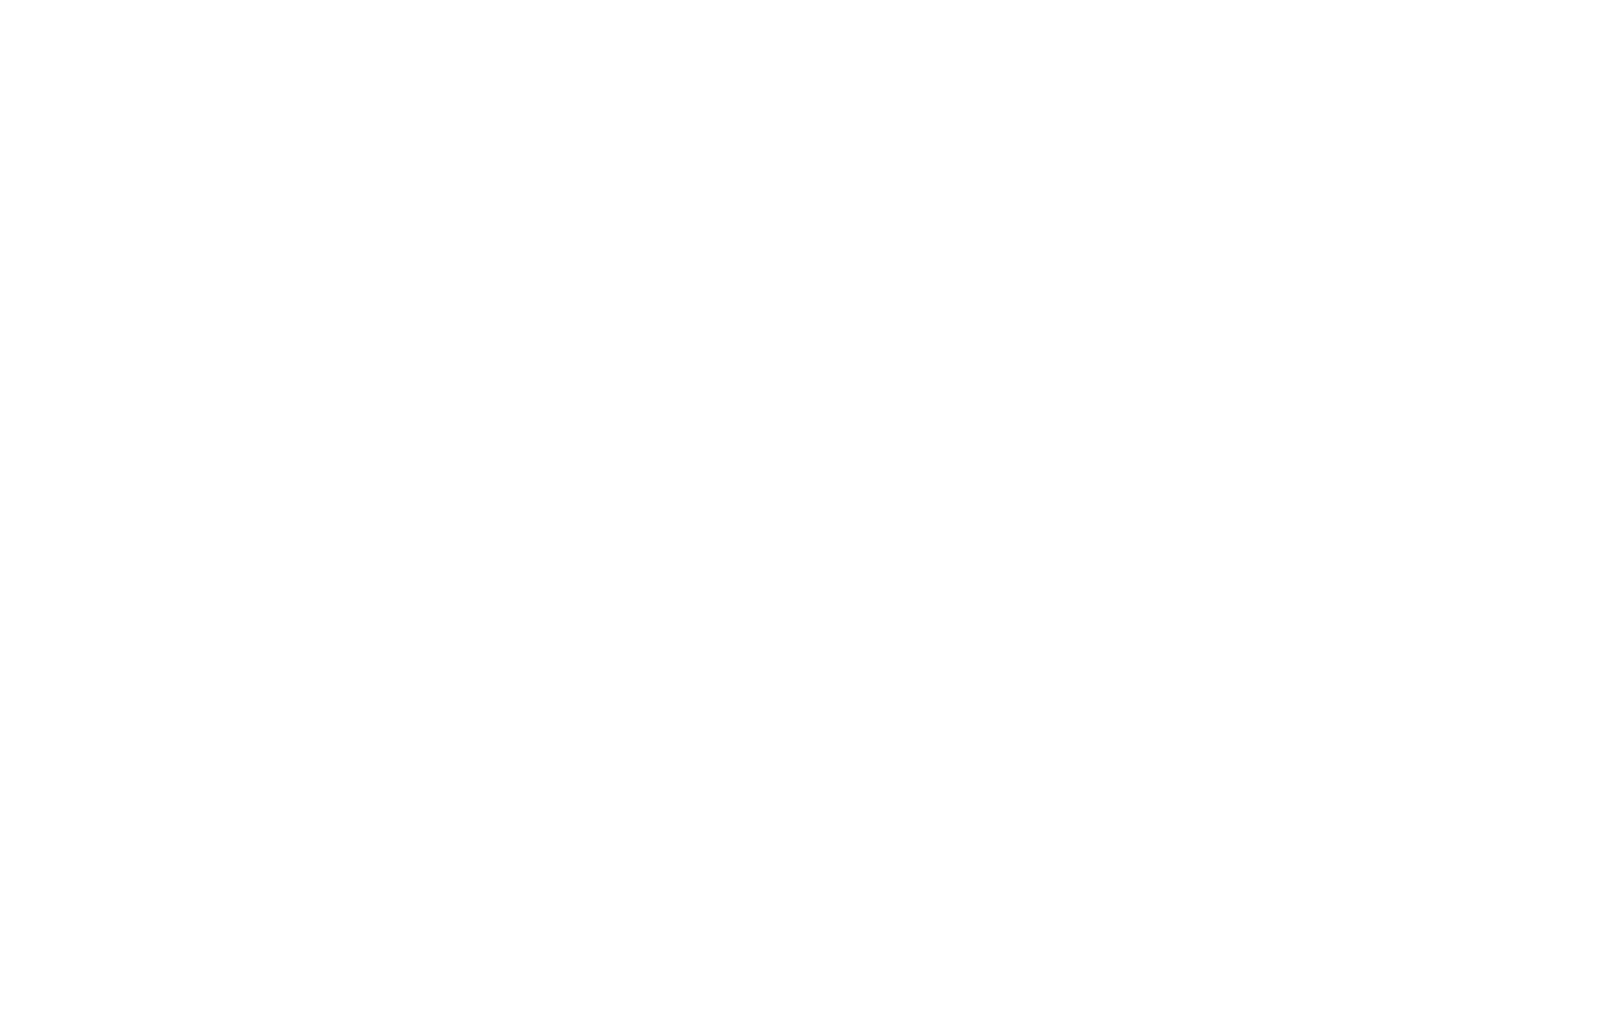 Premium Brands logo large for dark backgrounds (transparent PNG)